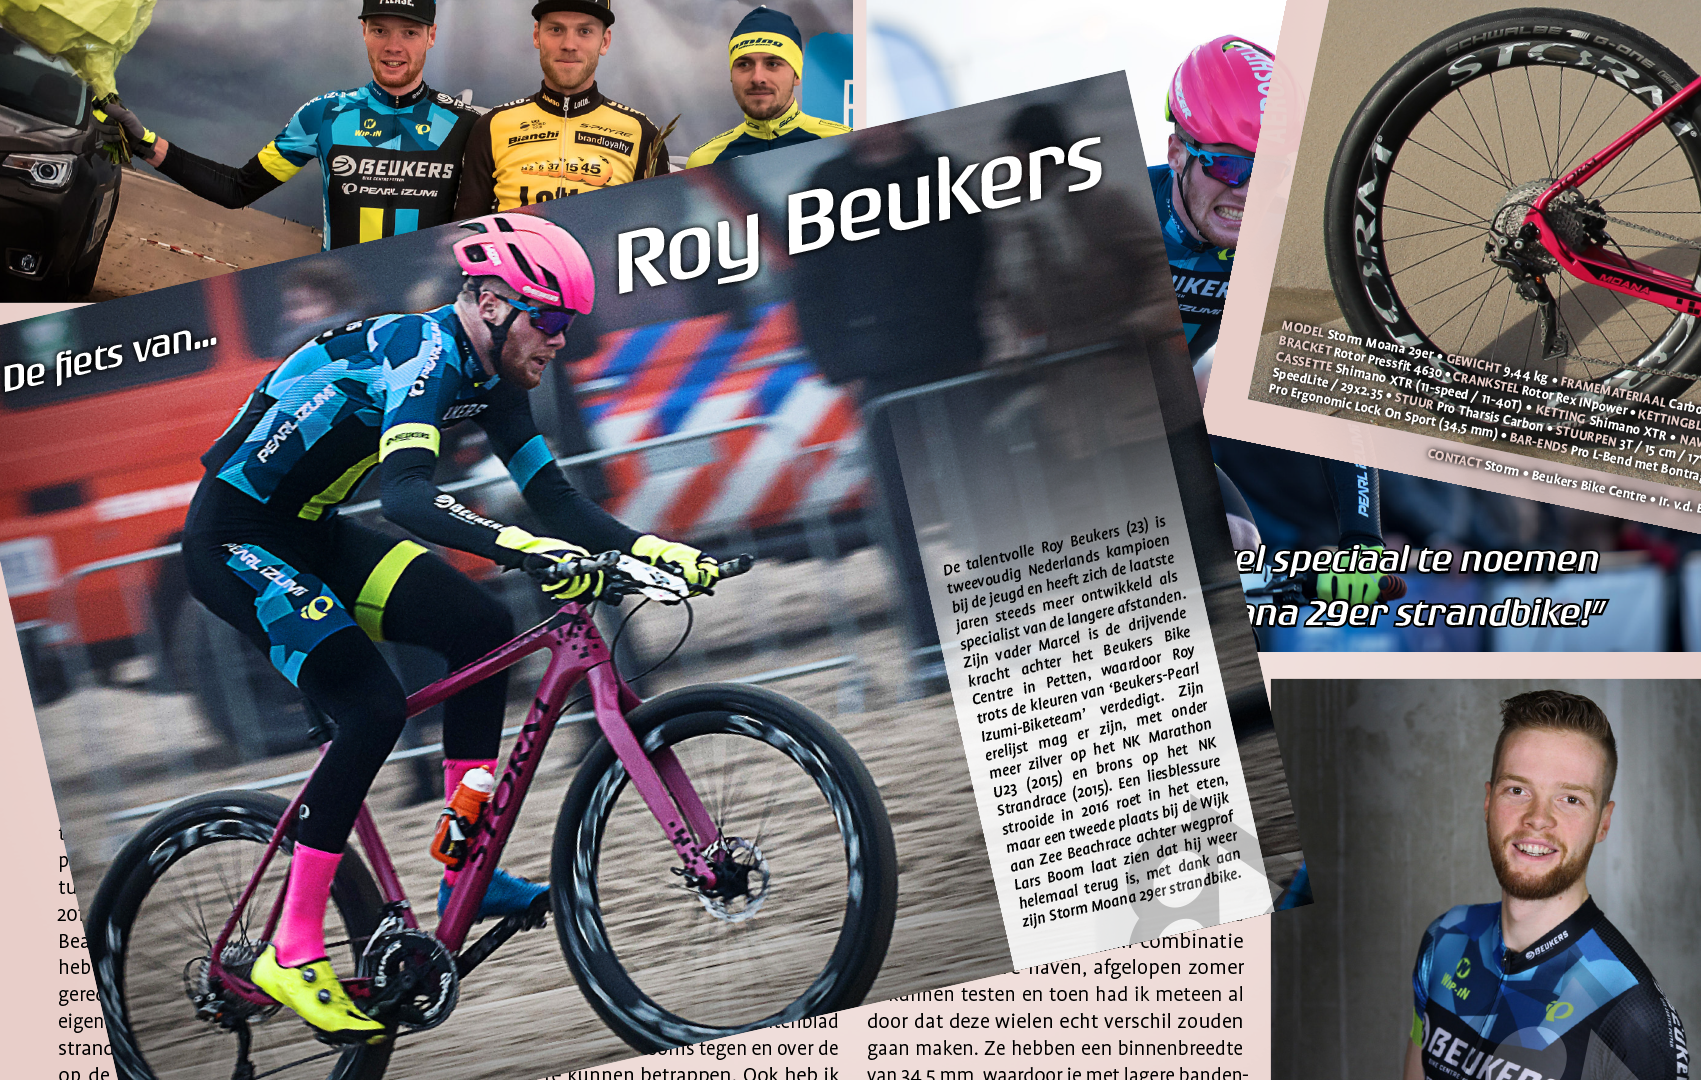 De fiets van Roy in het Bikefreak Magazine!